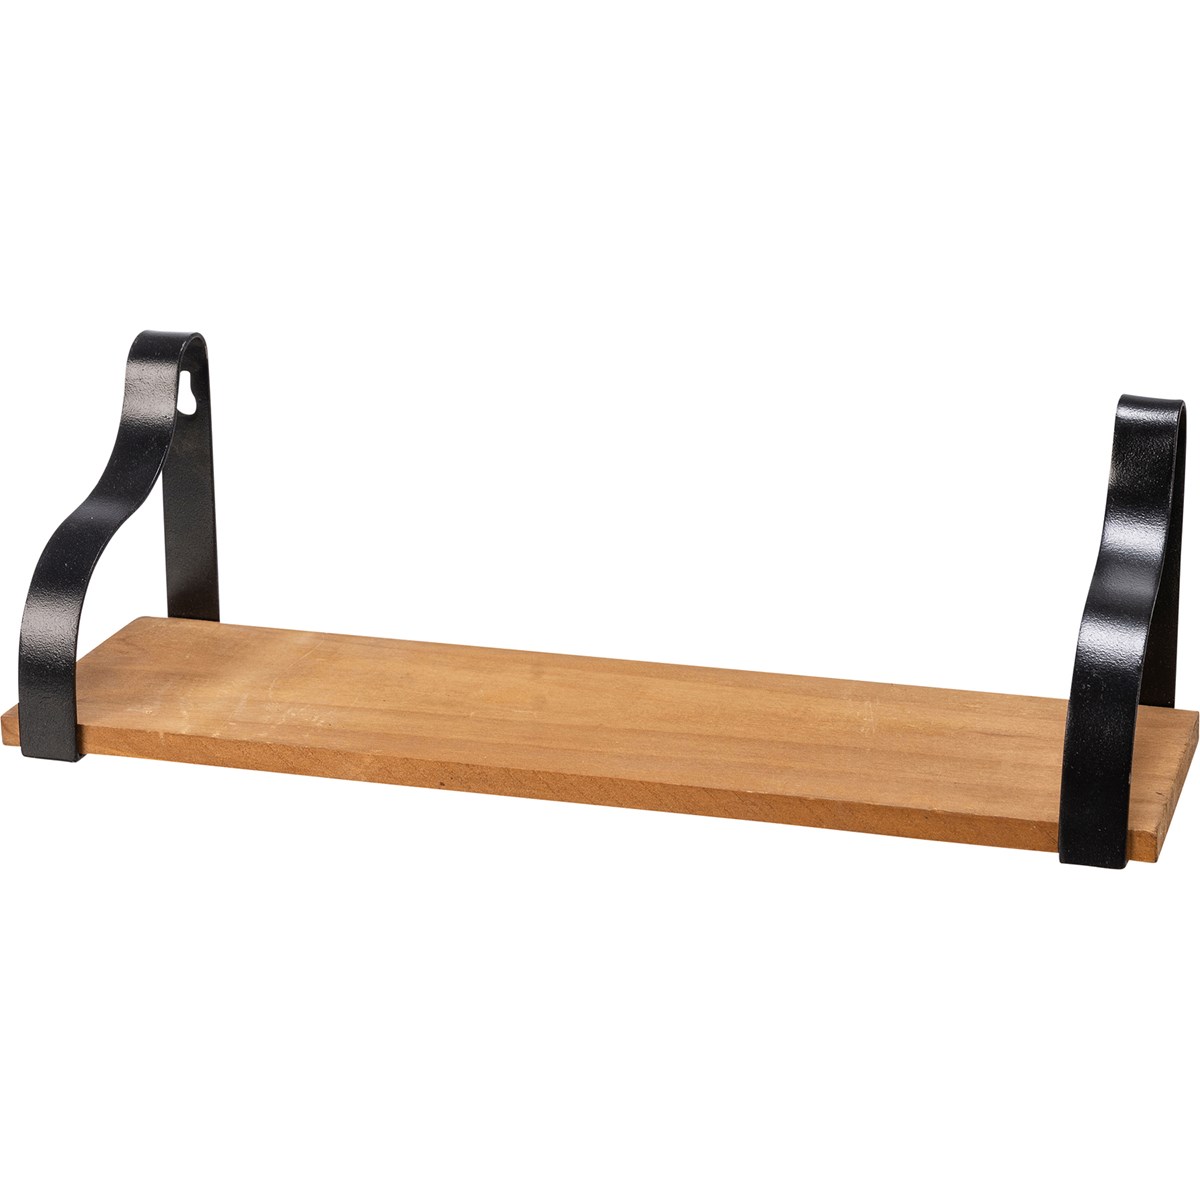 Shelf Set - Bracketed - 17" x 4.25" x 4", 13" x 4.25" x 4". 9" x 4.25" x 4" - Wood, Metal